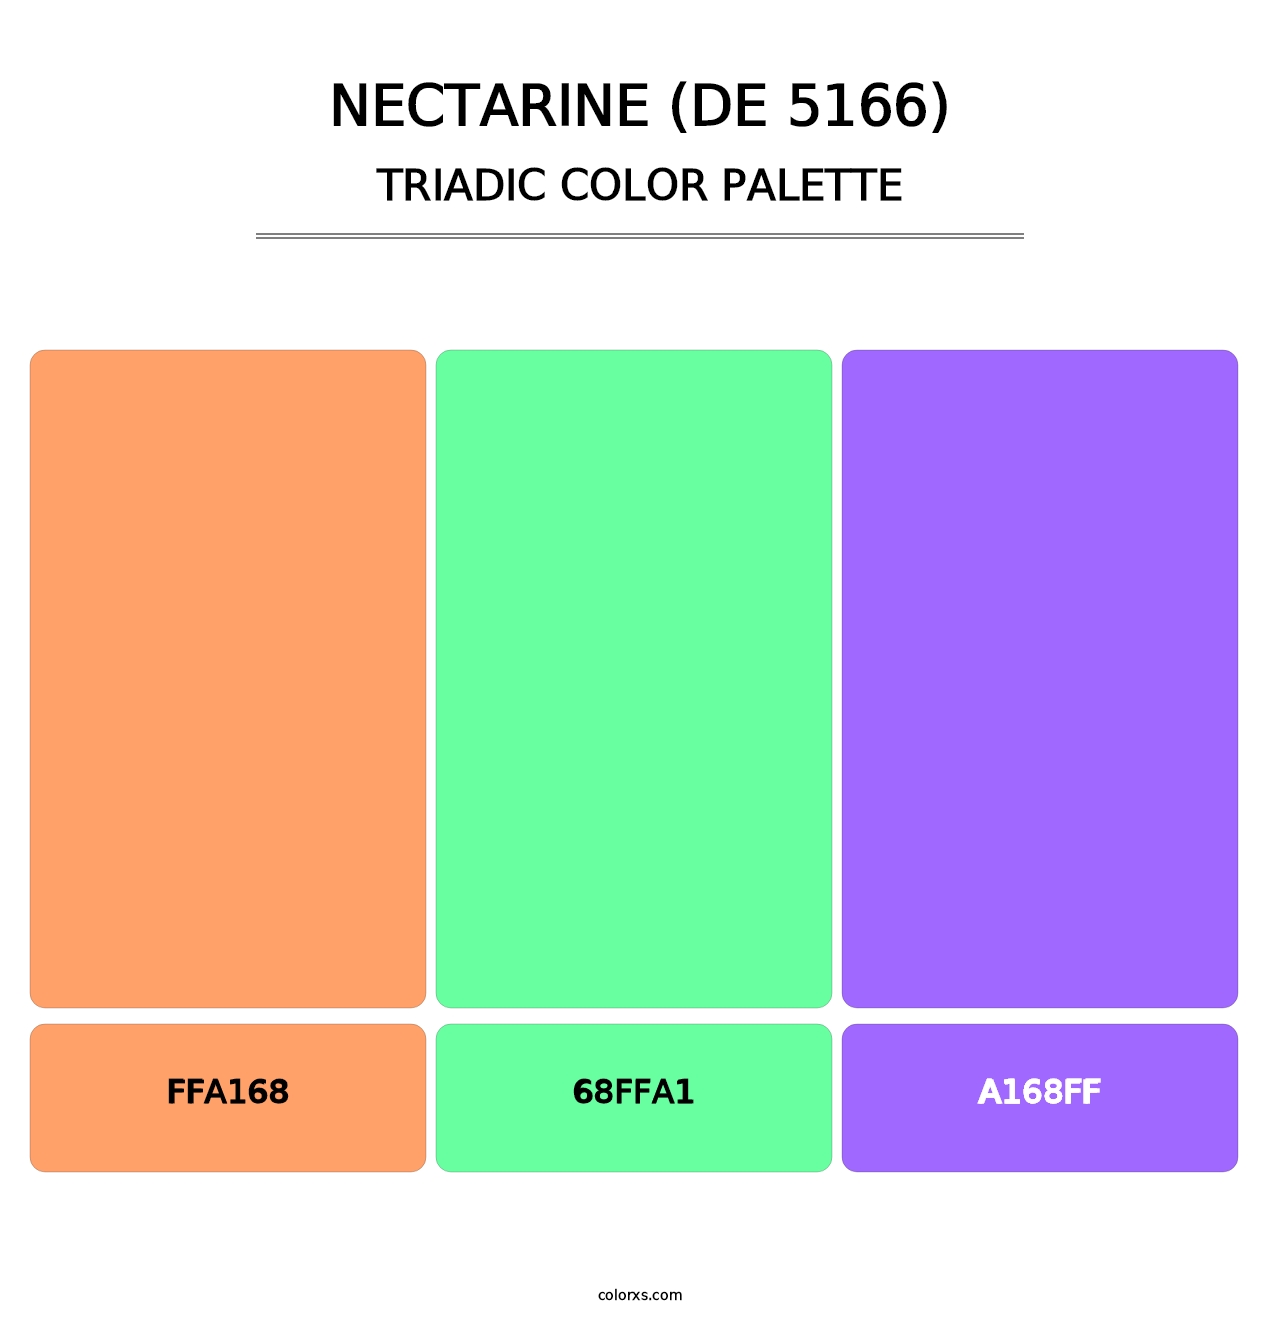 Nectarine (DE 5166) - Triadic Color Palette